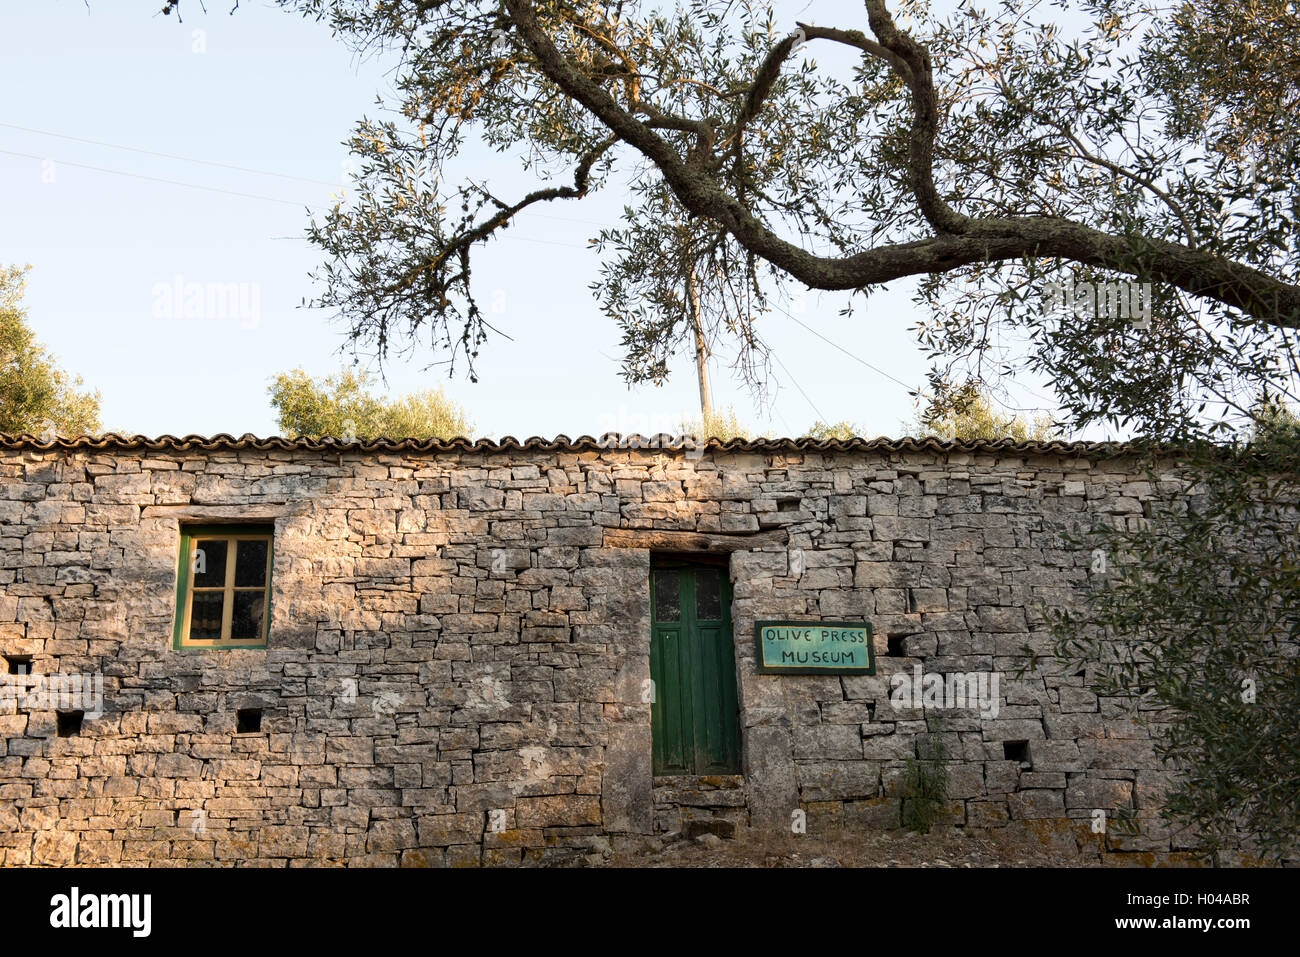 Le Musée de l'huile d'olive sur l'île de Paxos, îles Ioniennes, îles grecques, Grèce, Europe Banque D'Images